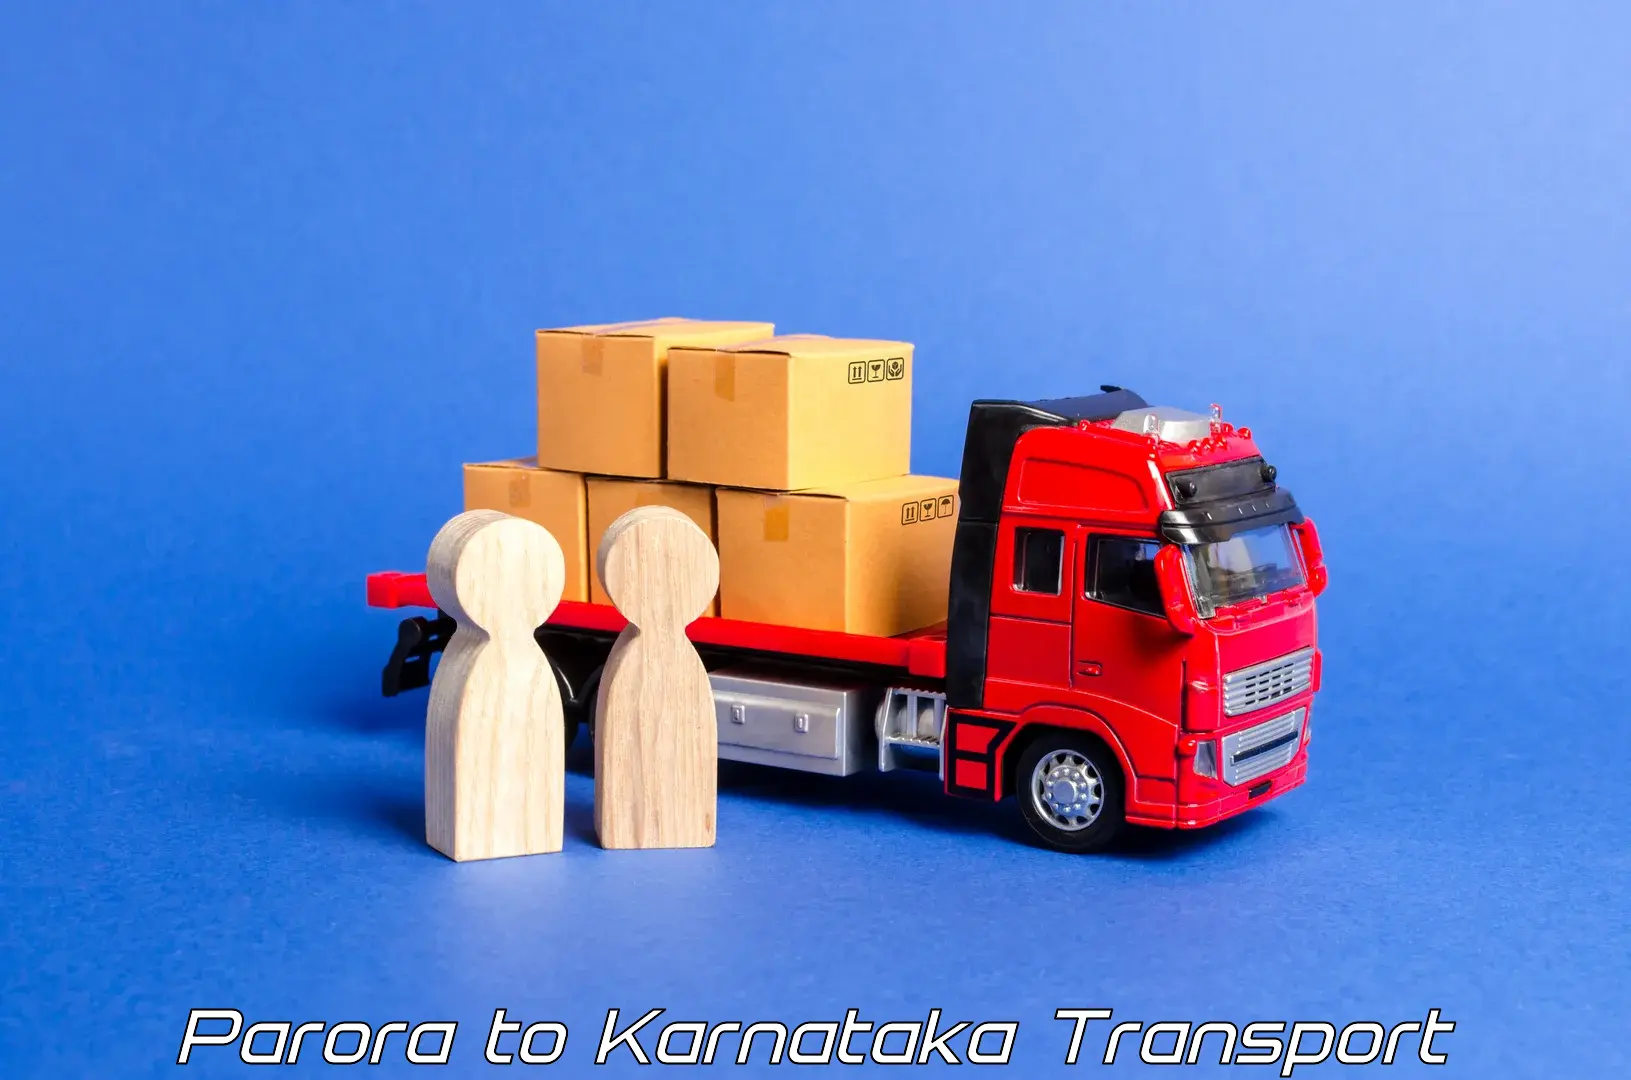 Interstate transport services Parora to Madhugiri